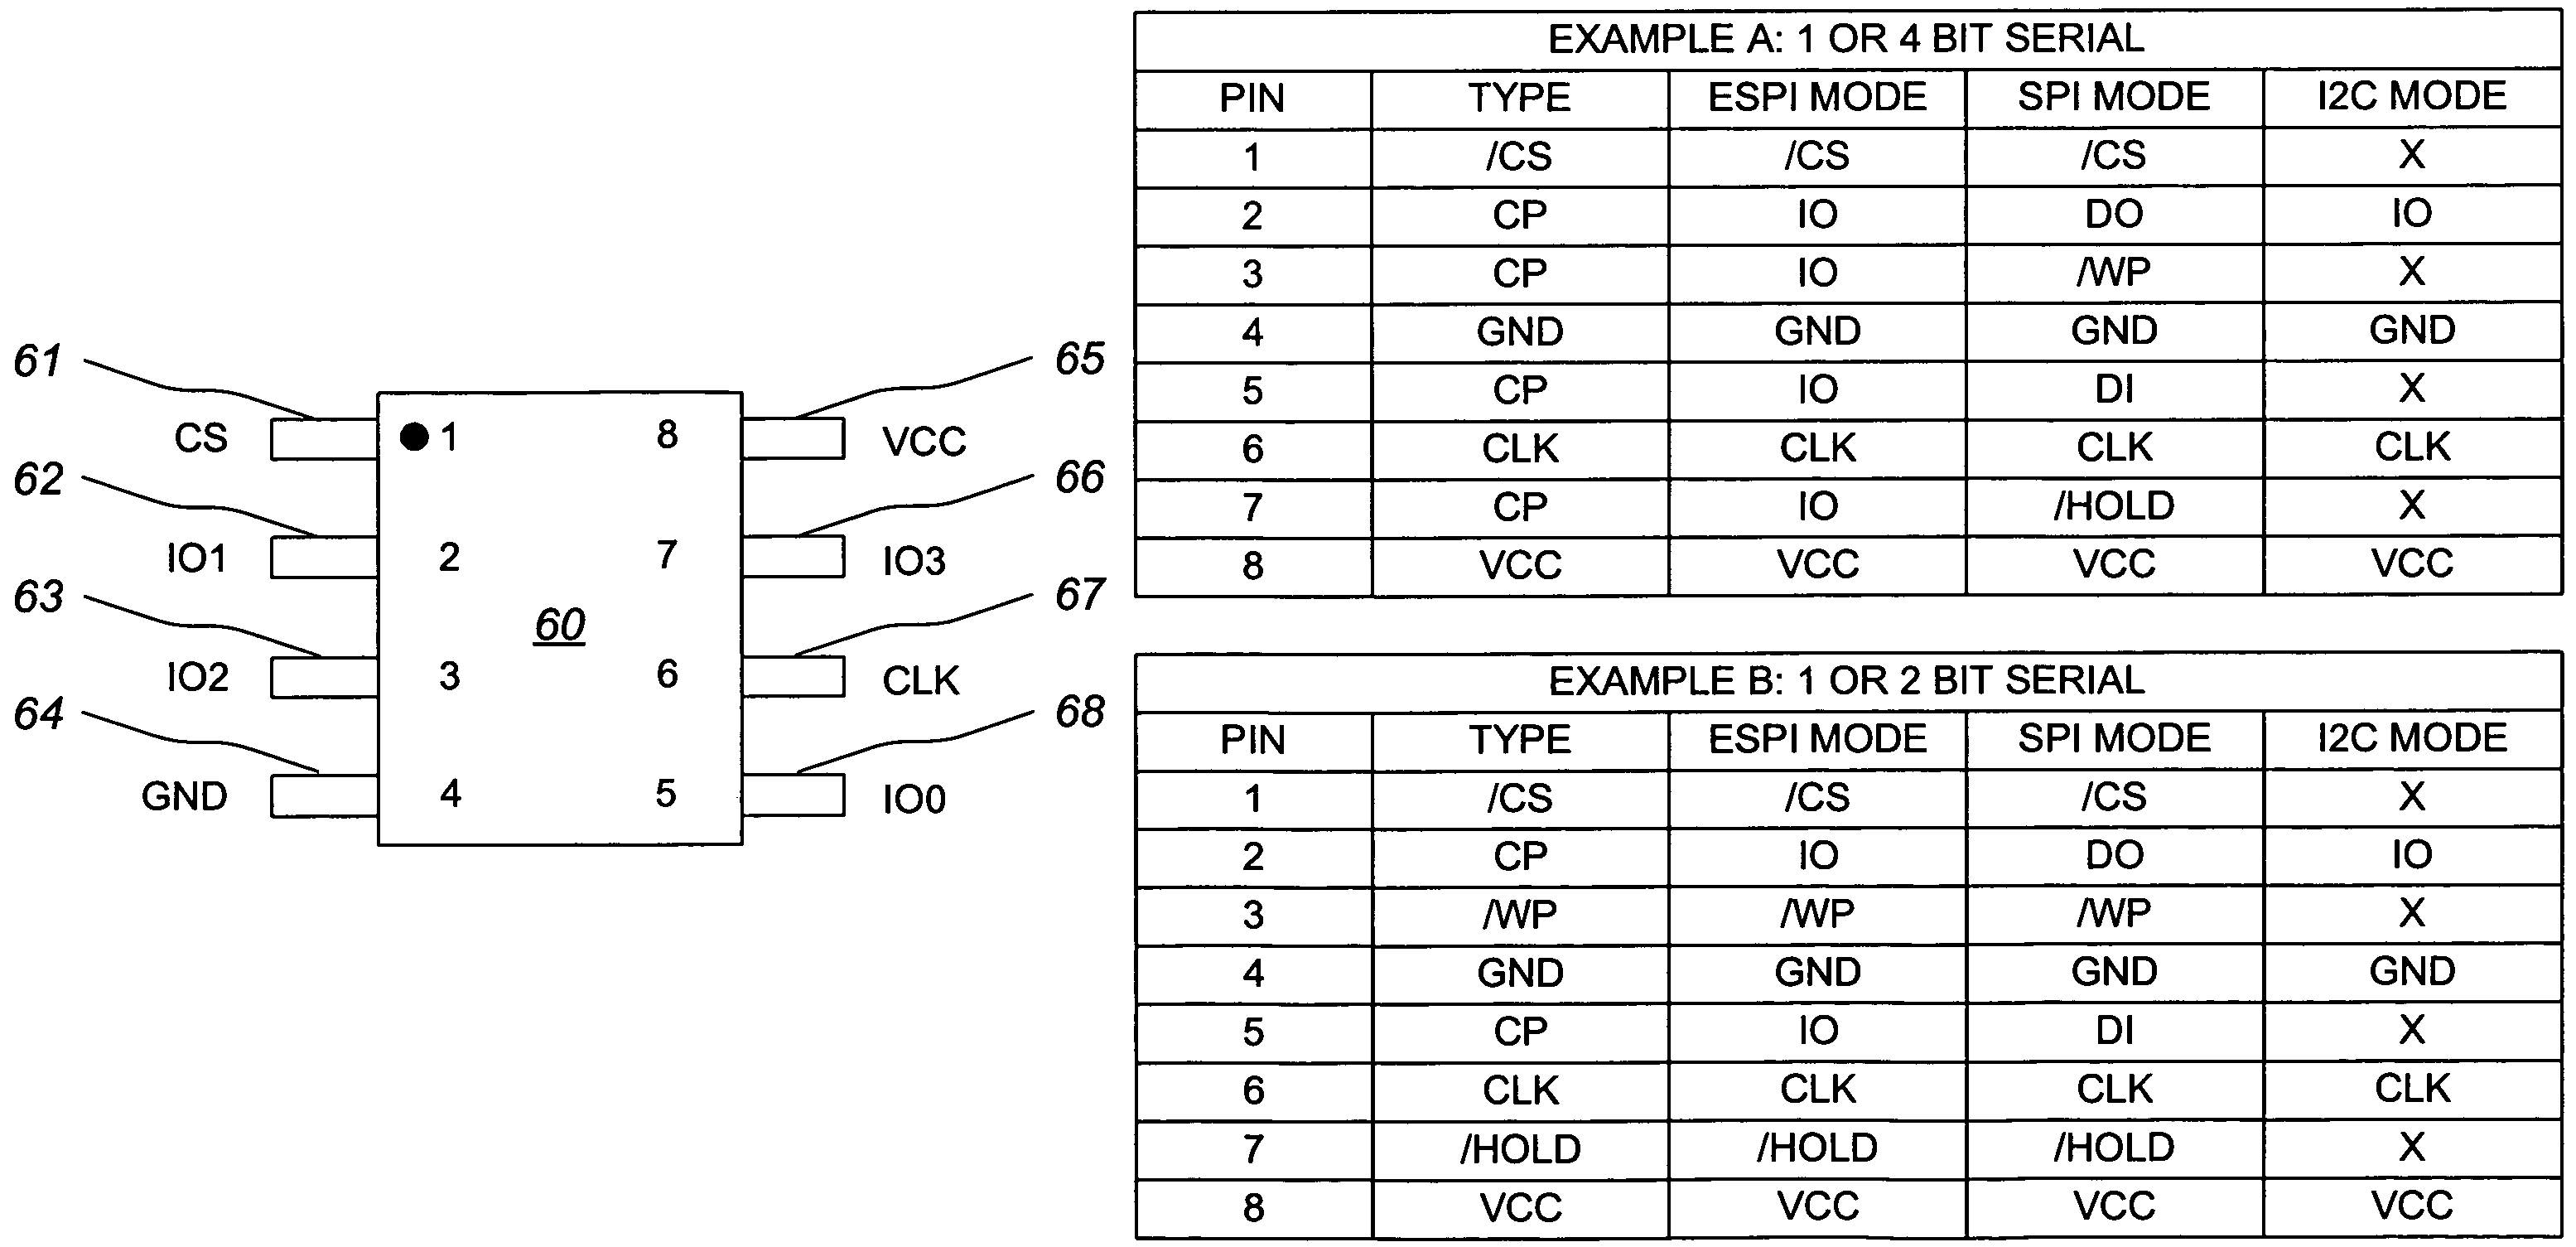 Serial flash semiconductor memory